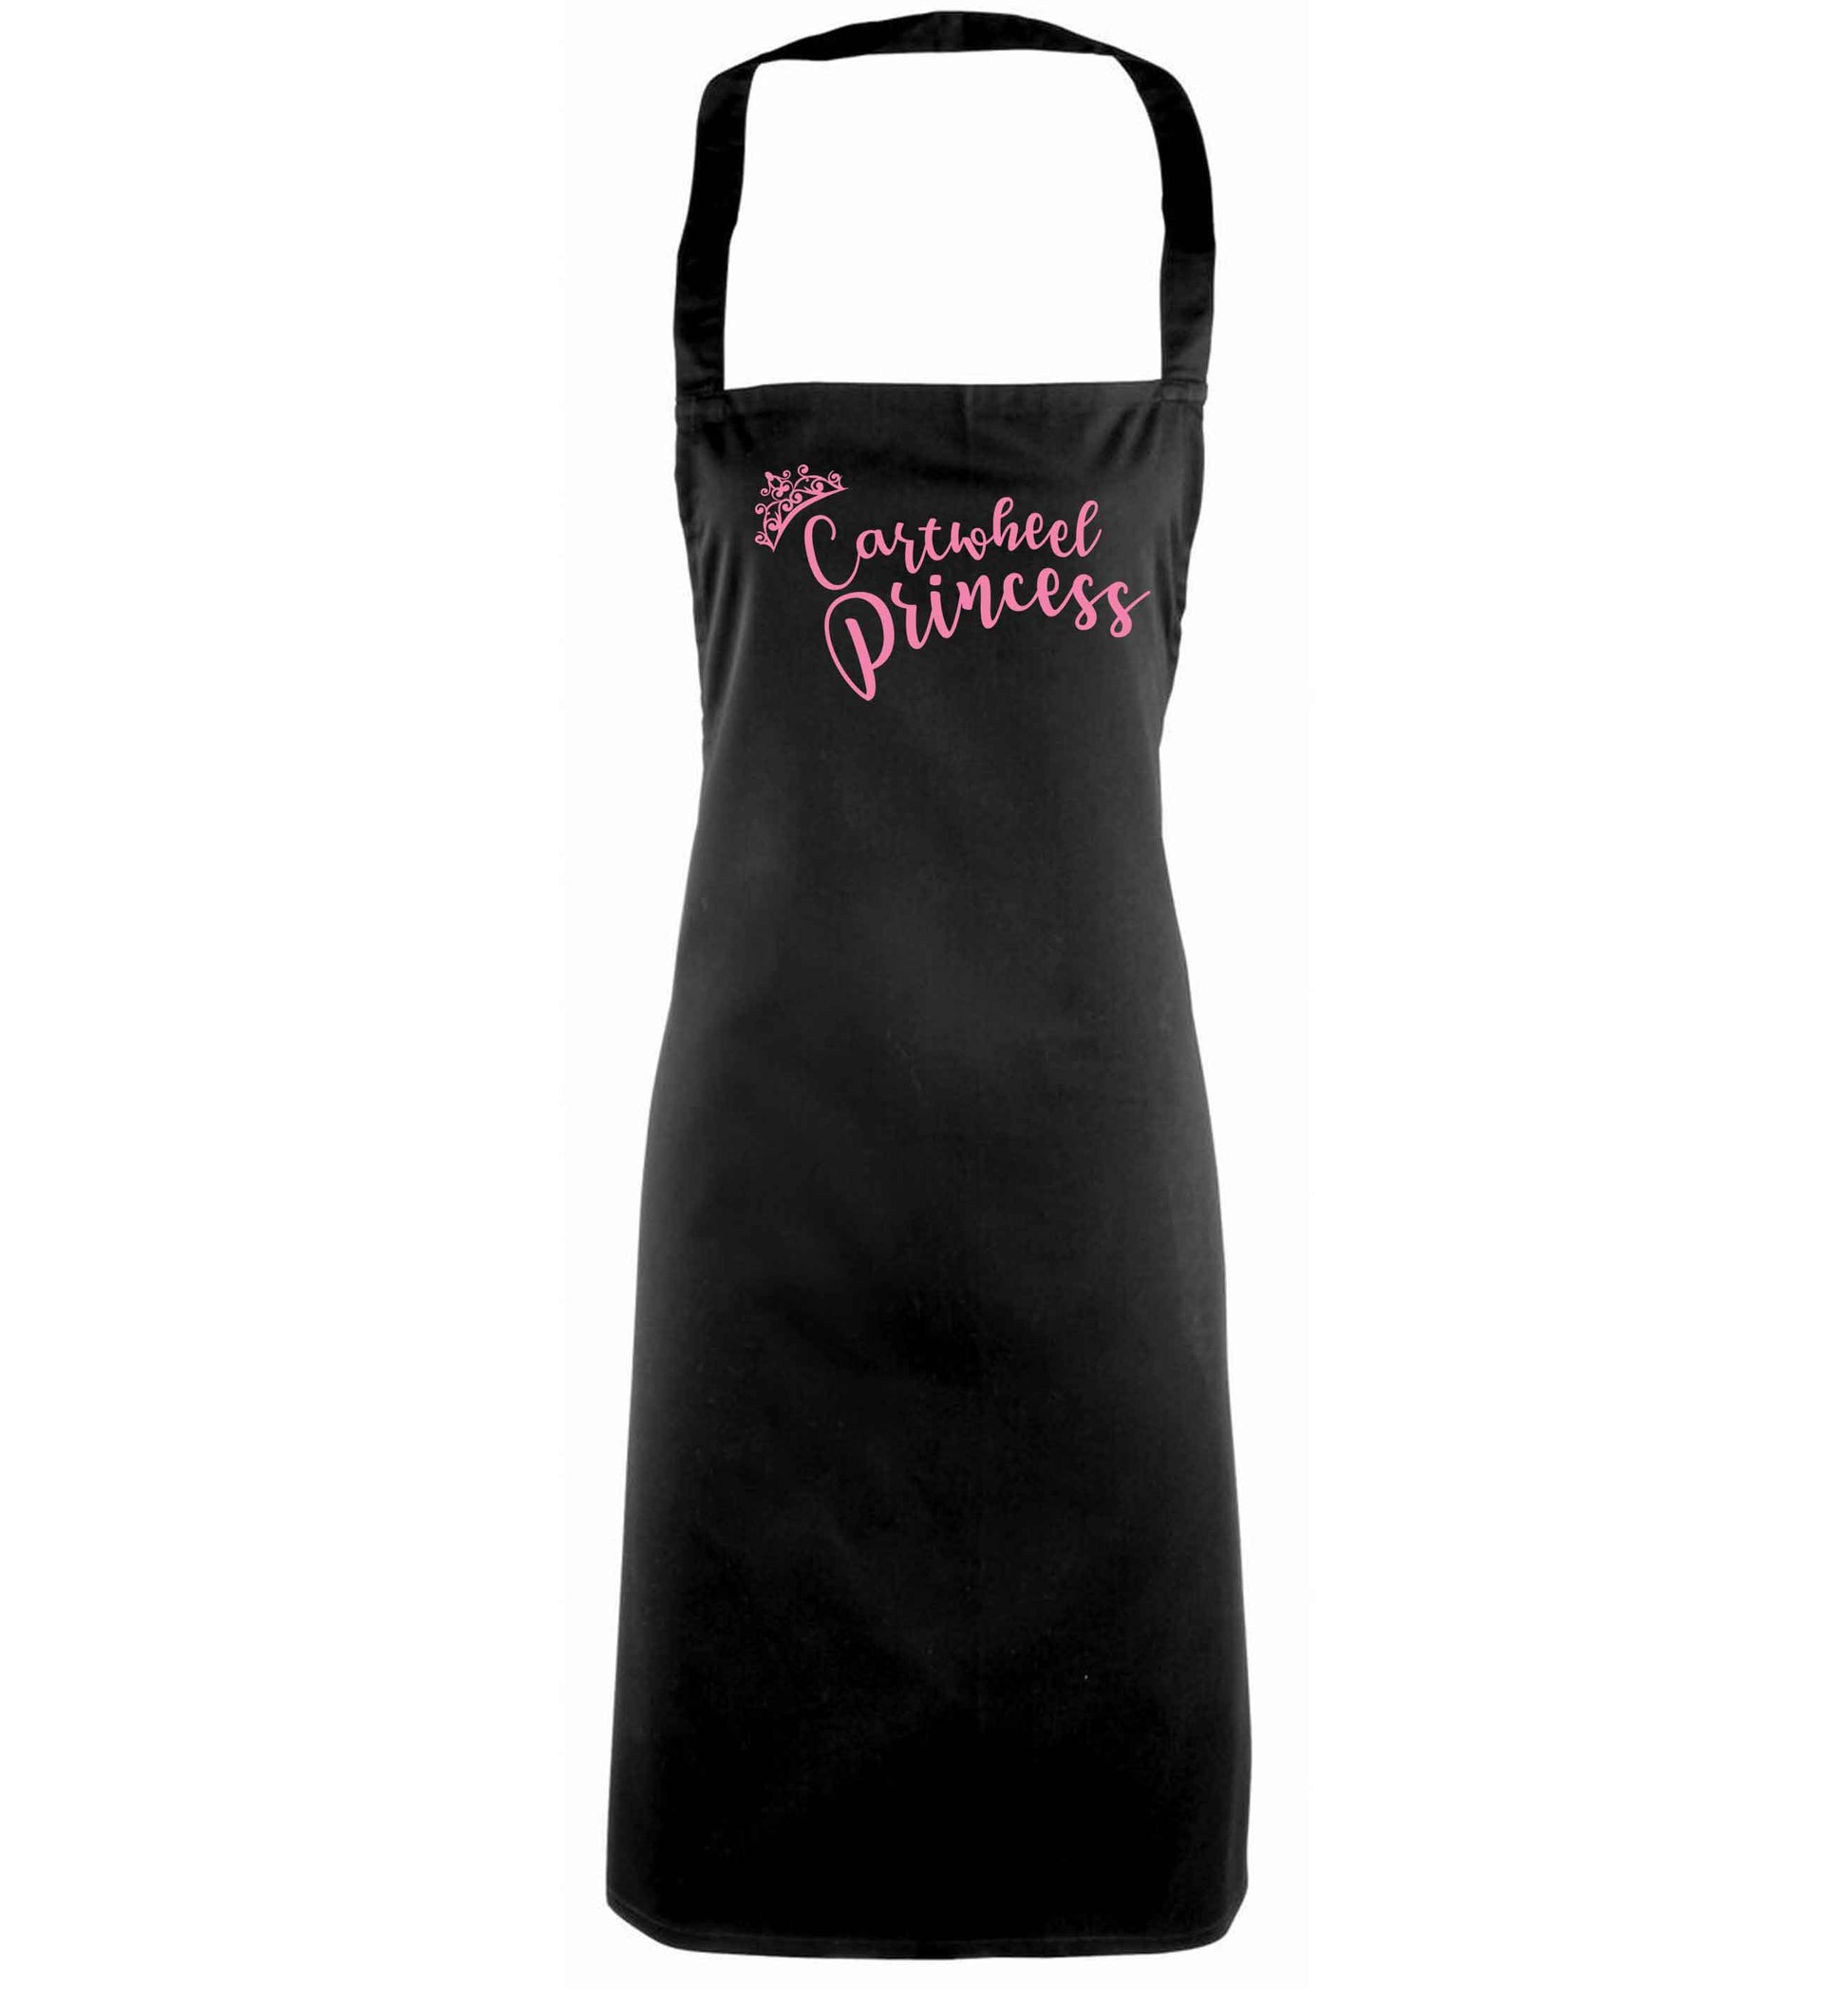 Cartwheel princess black apron